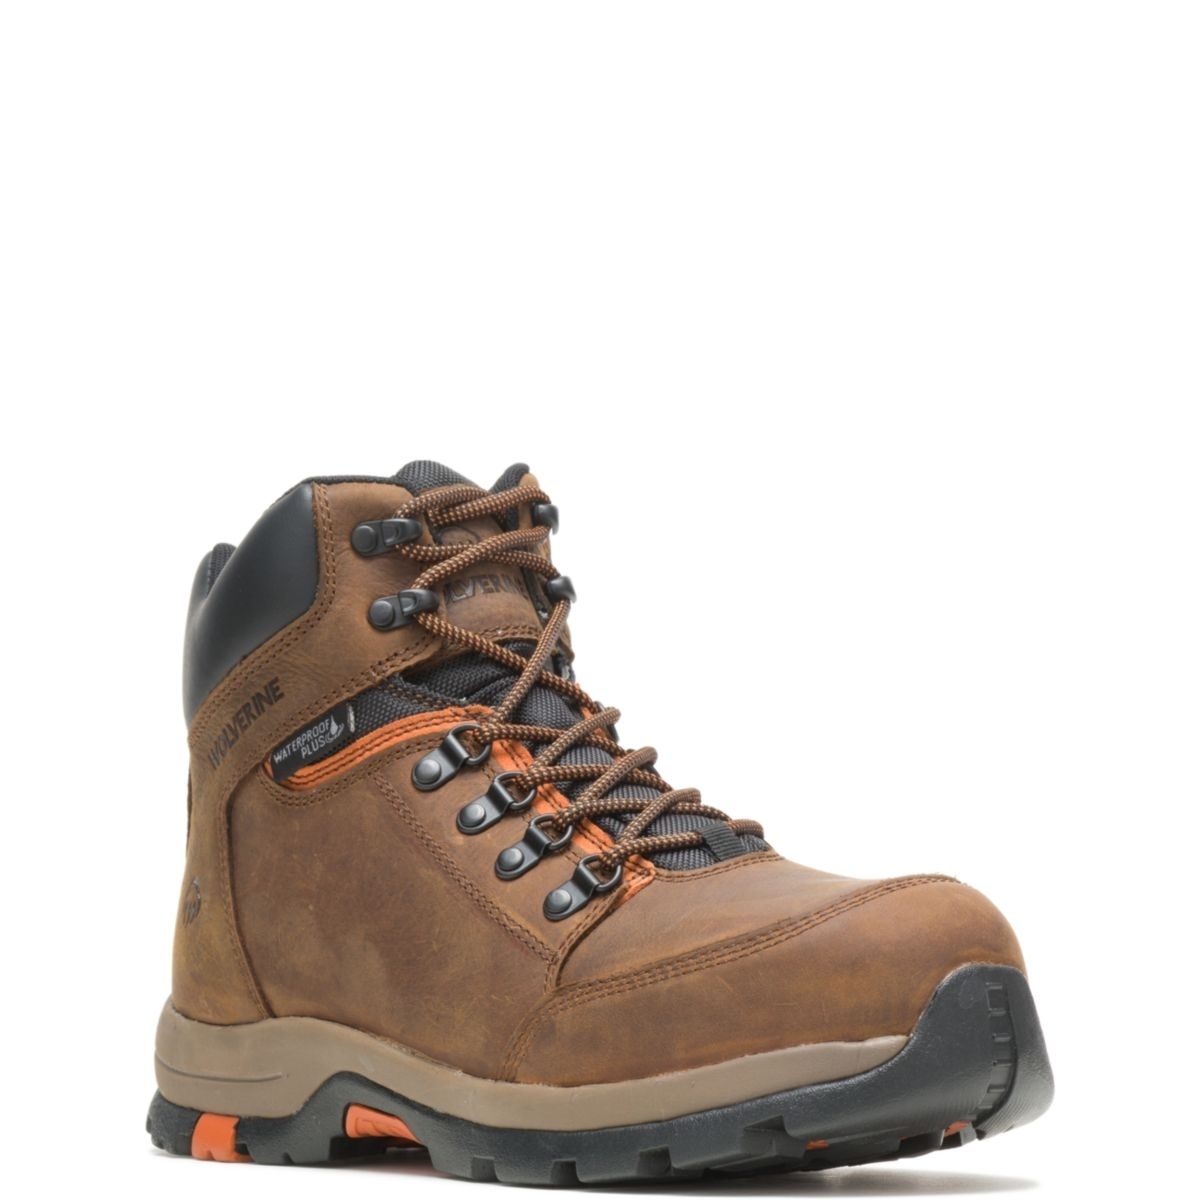 WOLVERINE Men's Grayson Steel Toe Waterproof Work Boot Brown - W211043 BROWN - BROWN, 8.5